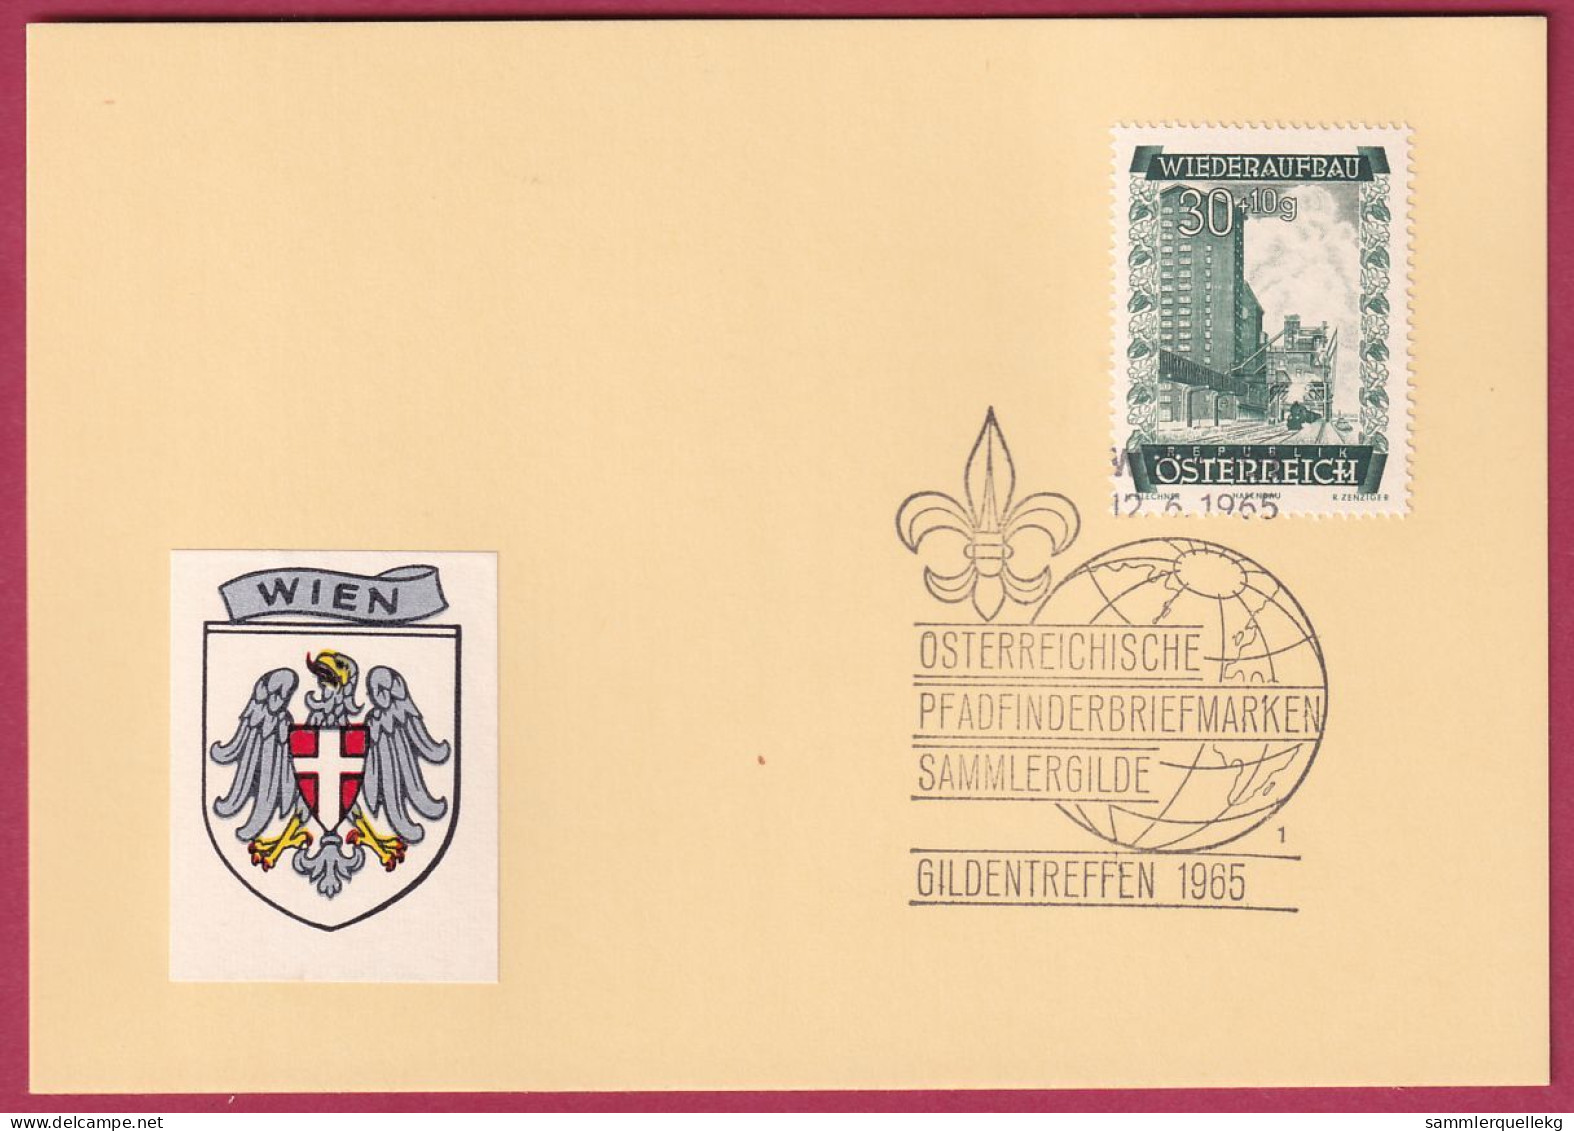 Österreich MNr. 860 Sonderstempel 12. 6. 1965 Österreich Pfadfinderbriefmarken Sammlergilde 1965 - Lettres & Documents